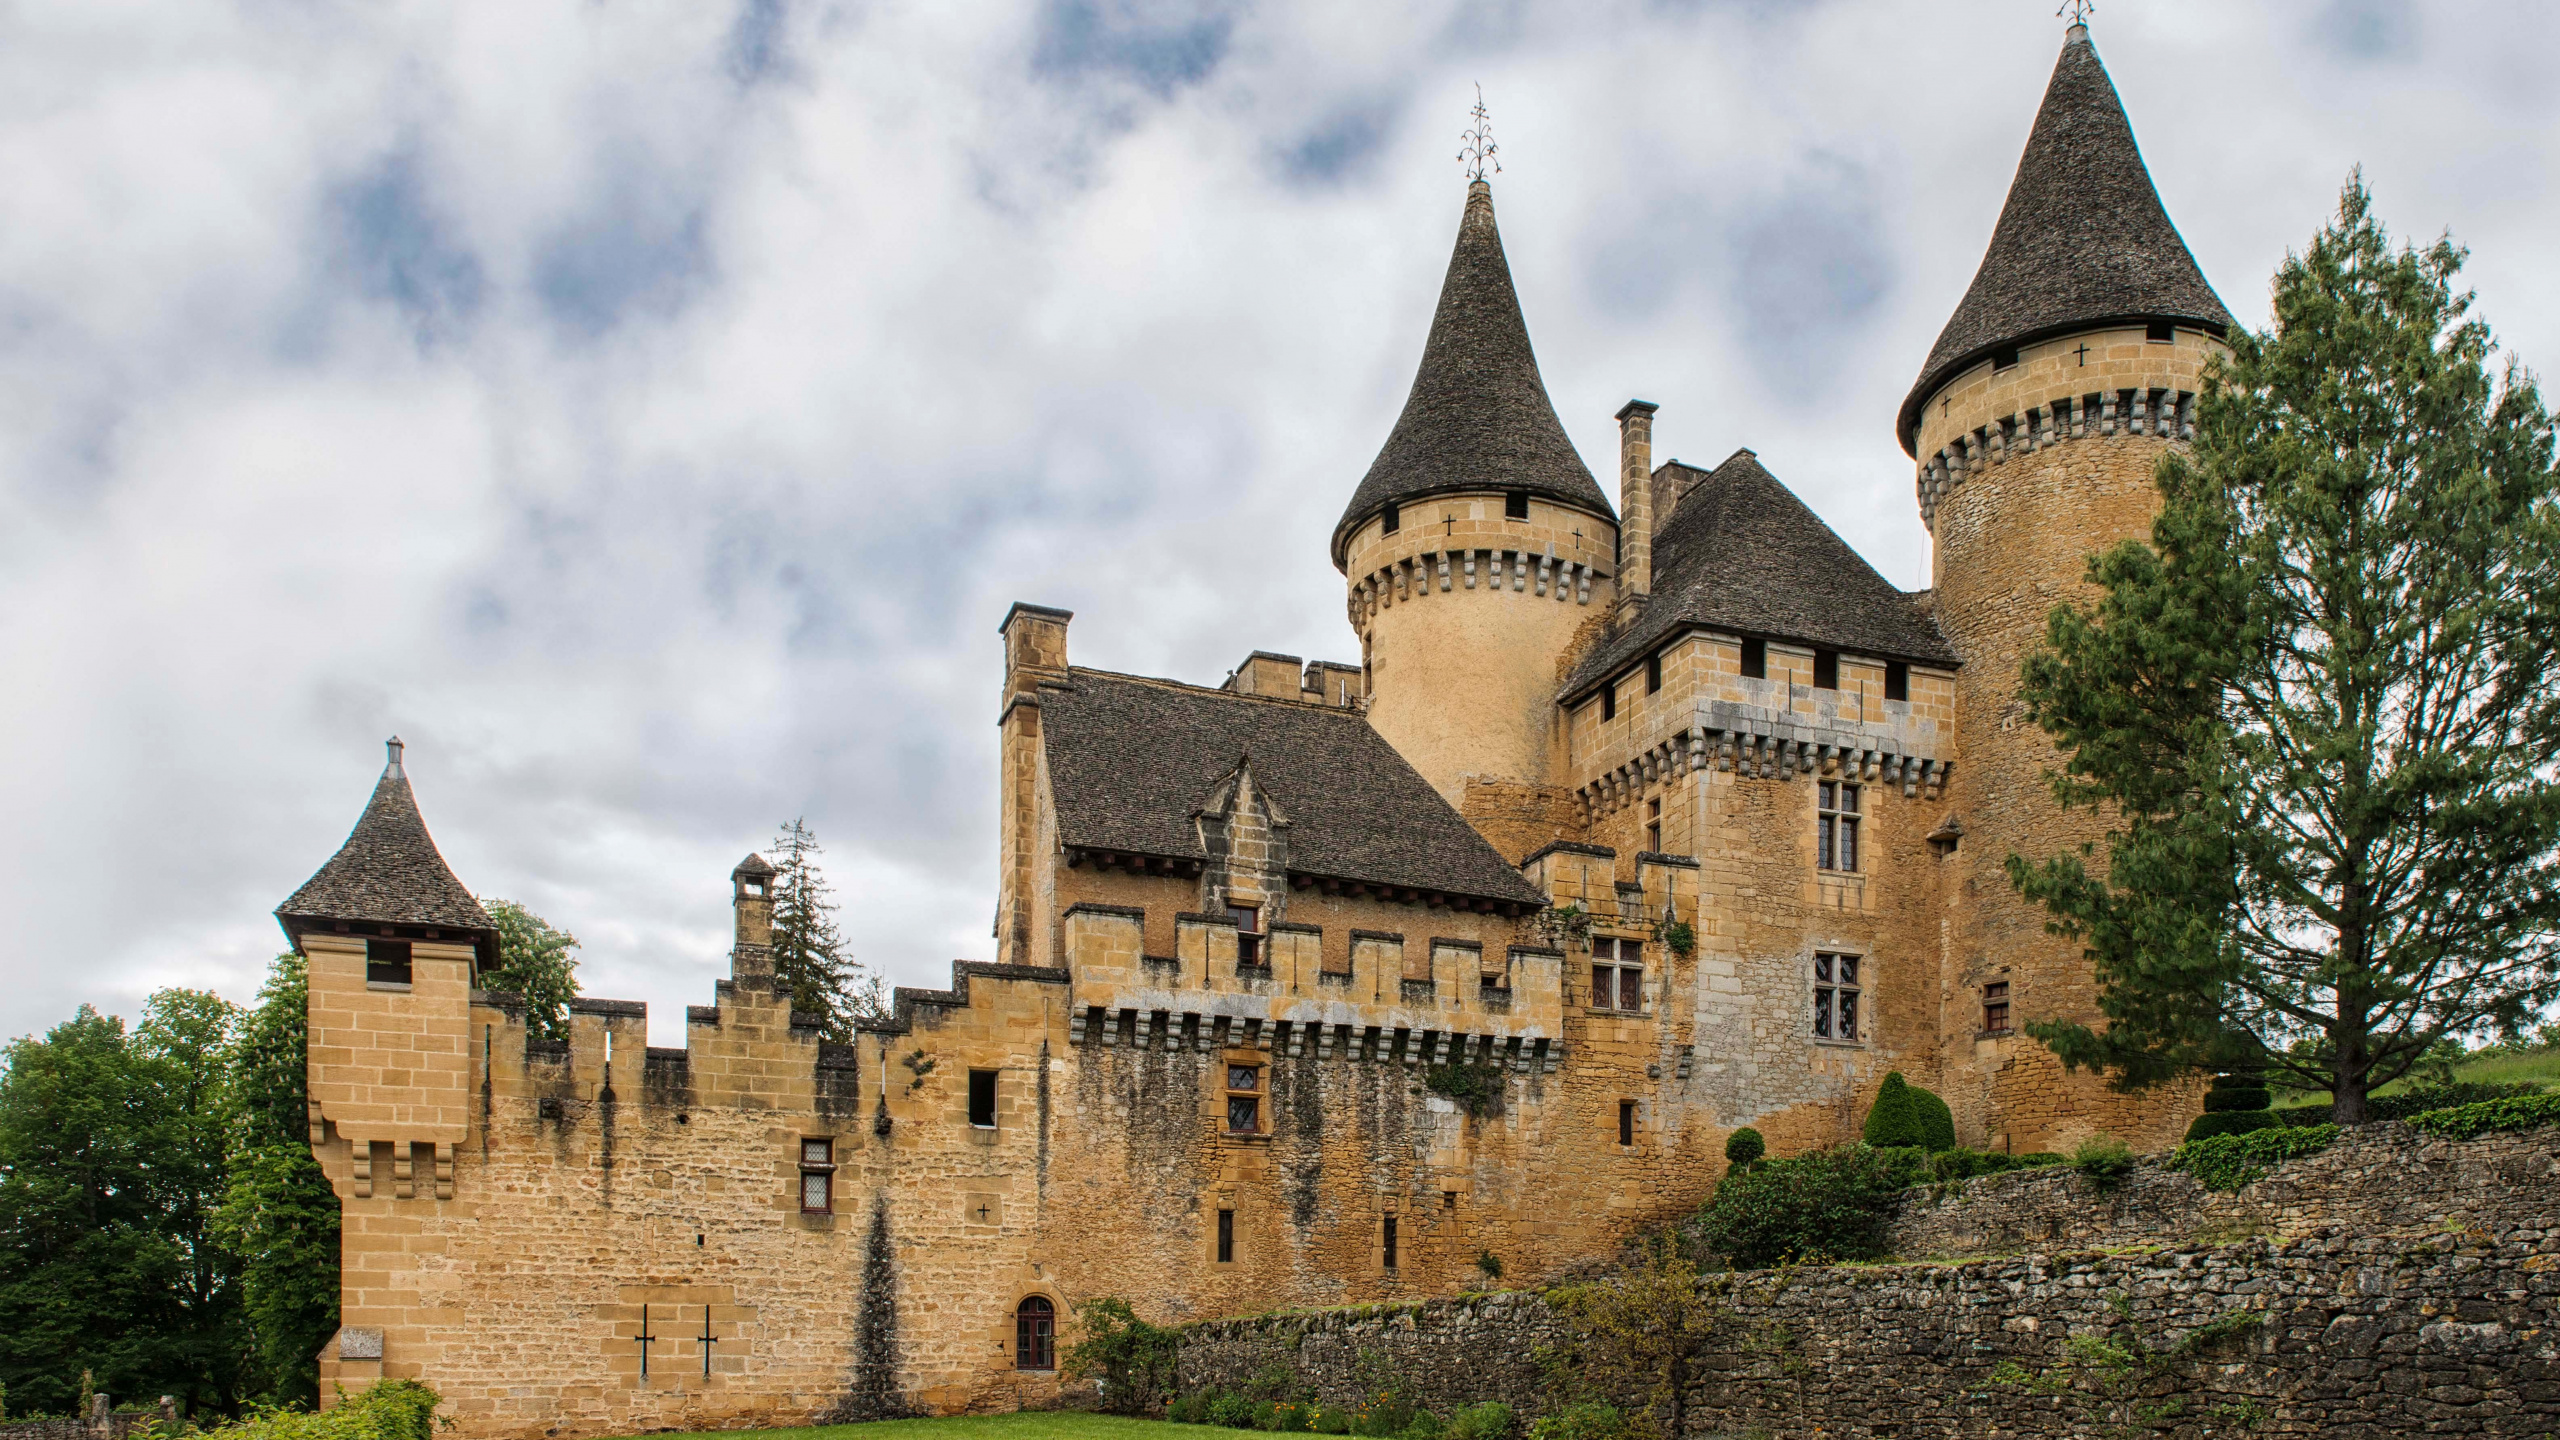 城堡, 防御工事, 中世纪建筑风格, 庄家, 天空 壁纸 2560x1440 允许